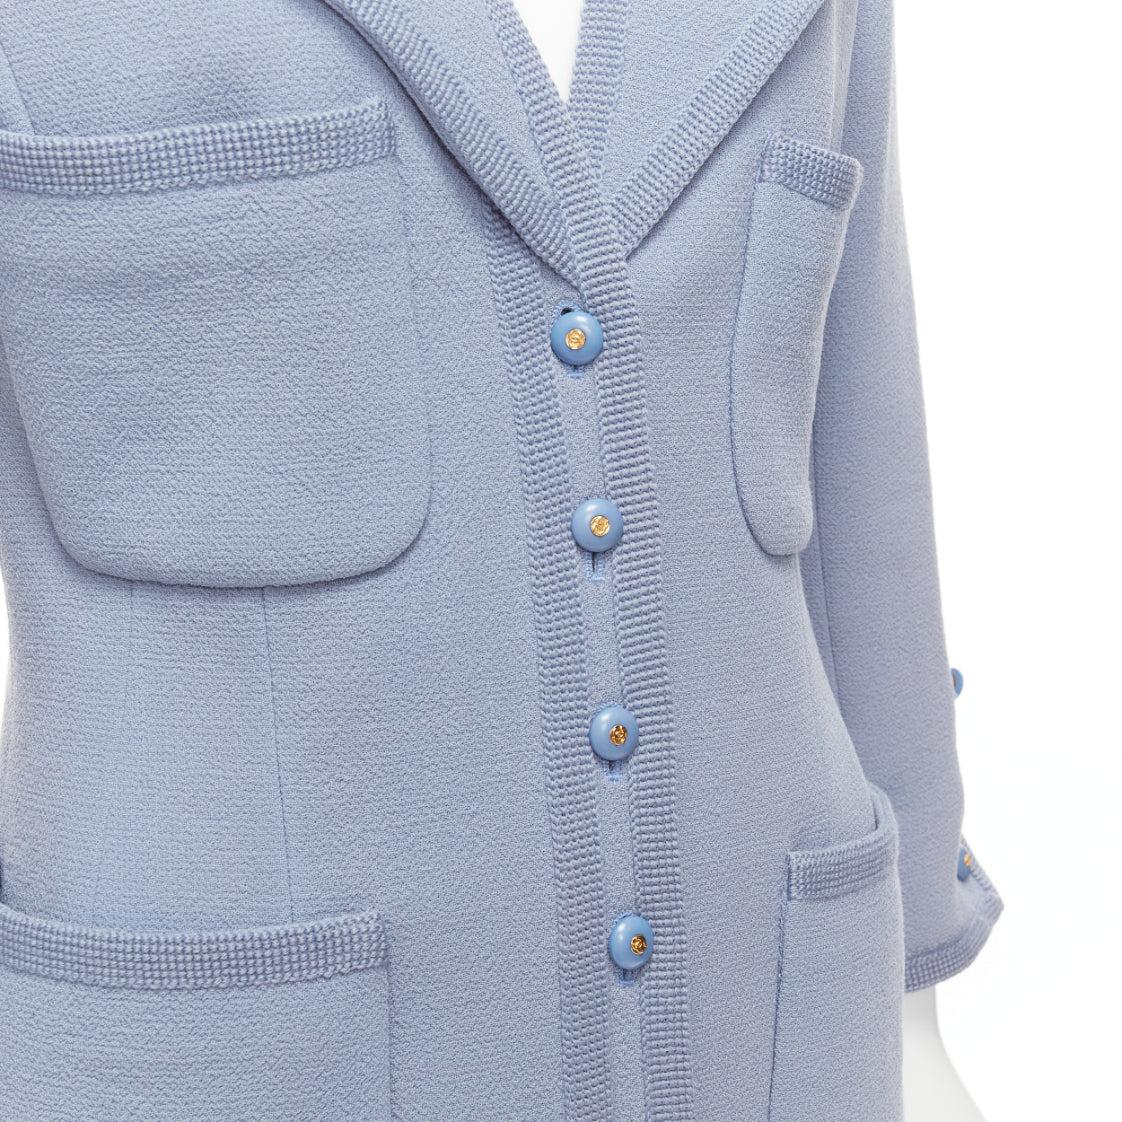 CHANEL 1997 Vintage powder blue 100% wool 4 pocket CC logo jacket FR38 M 4